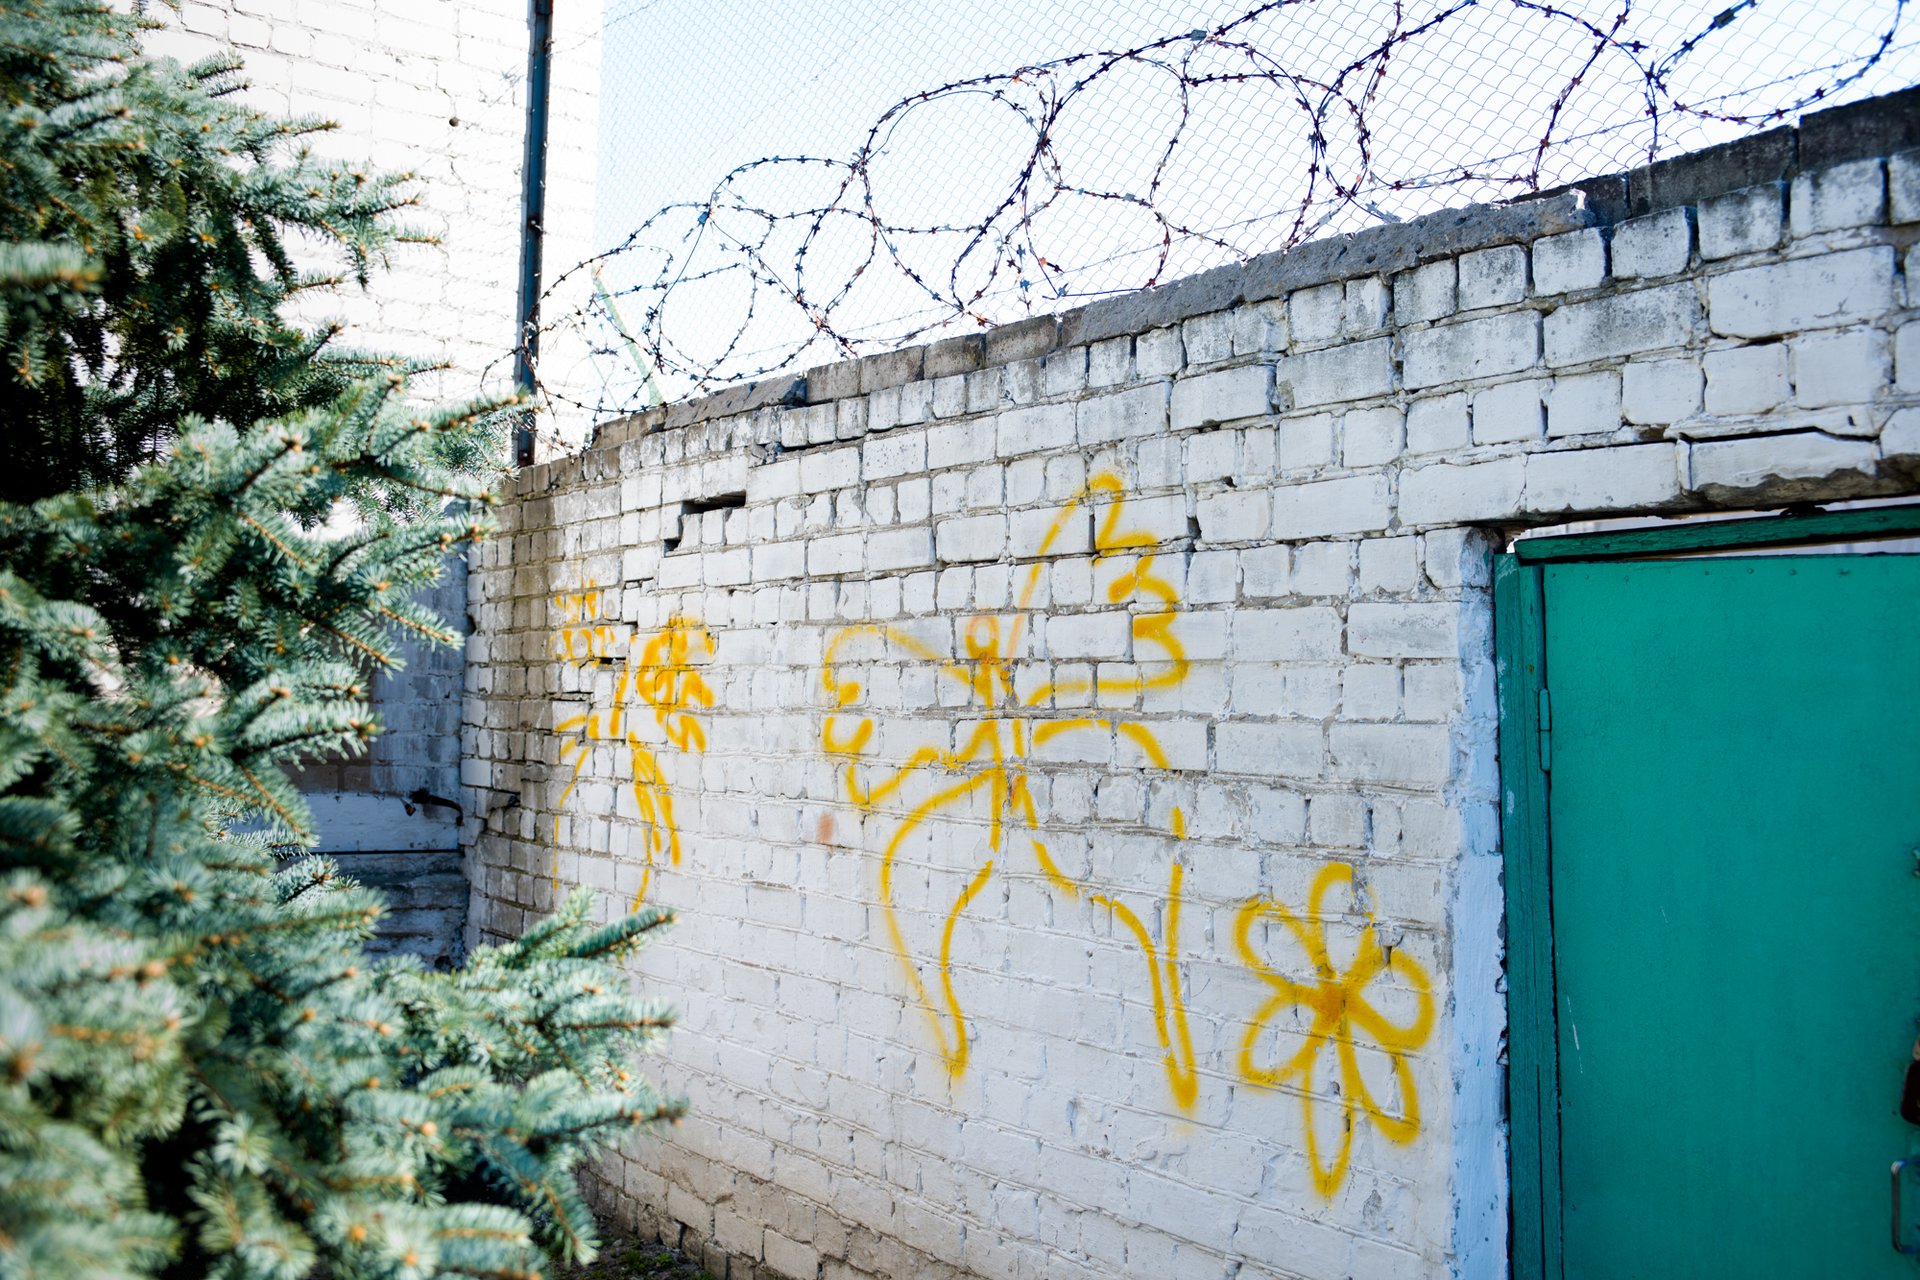 "Женщина в тюрьме — это табу и позор семьи" — фотопроект Миши Фридмана